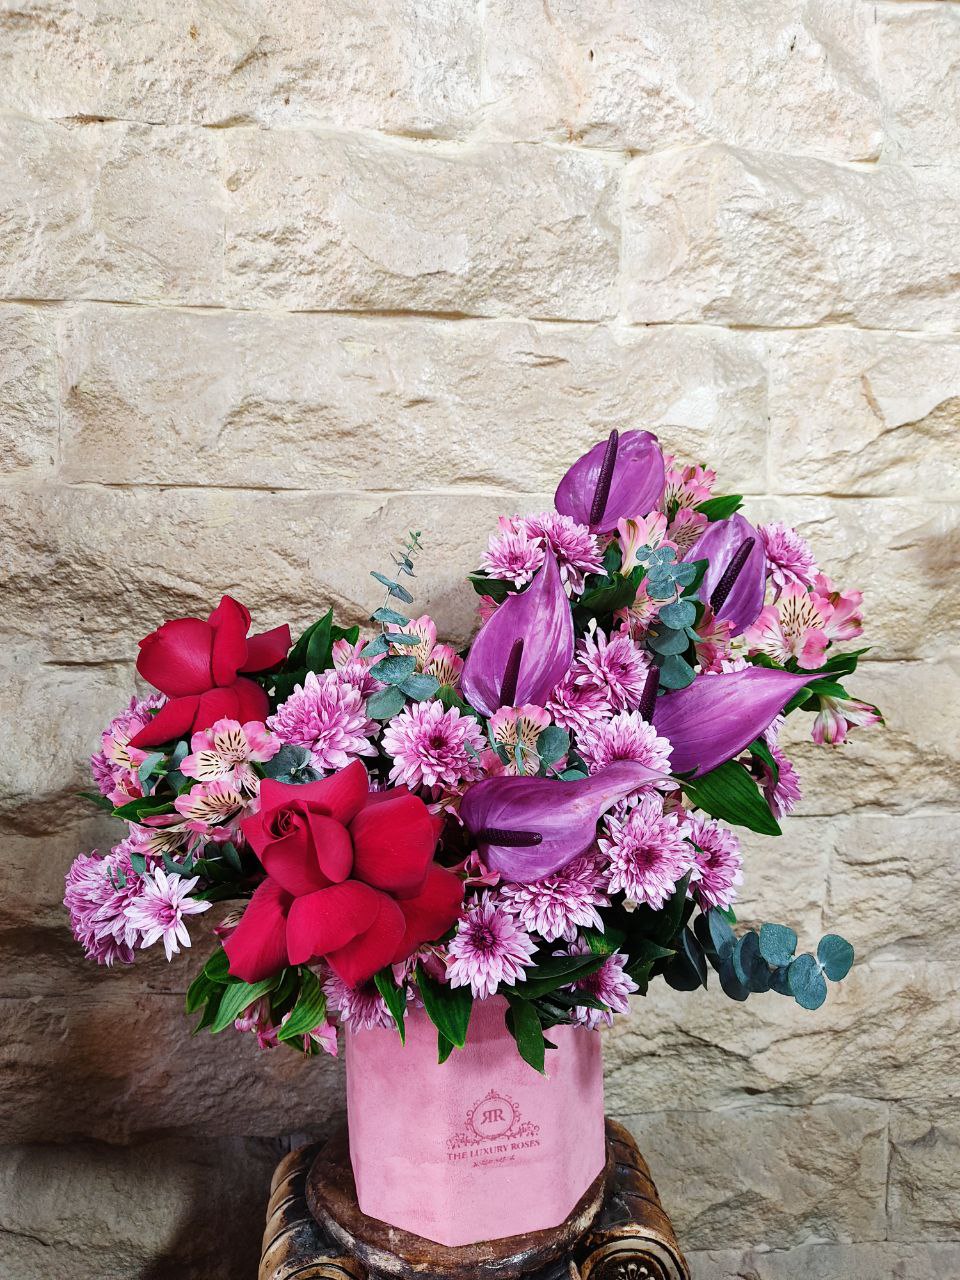 ایده هایی خاص و زیبا برای شب یلدا و جشنی خاص با محصولات گل از گلفروشی آنلاین اطلس گل در شیراز زیبا.